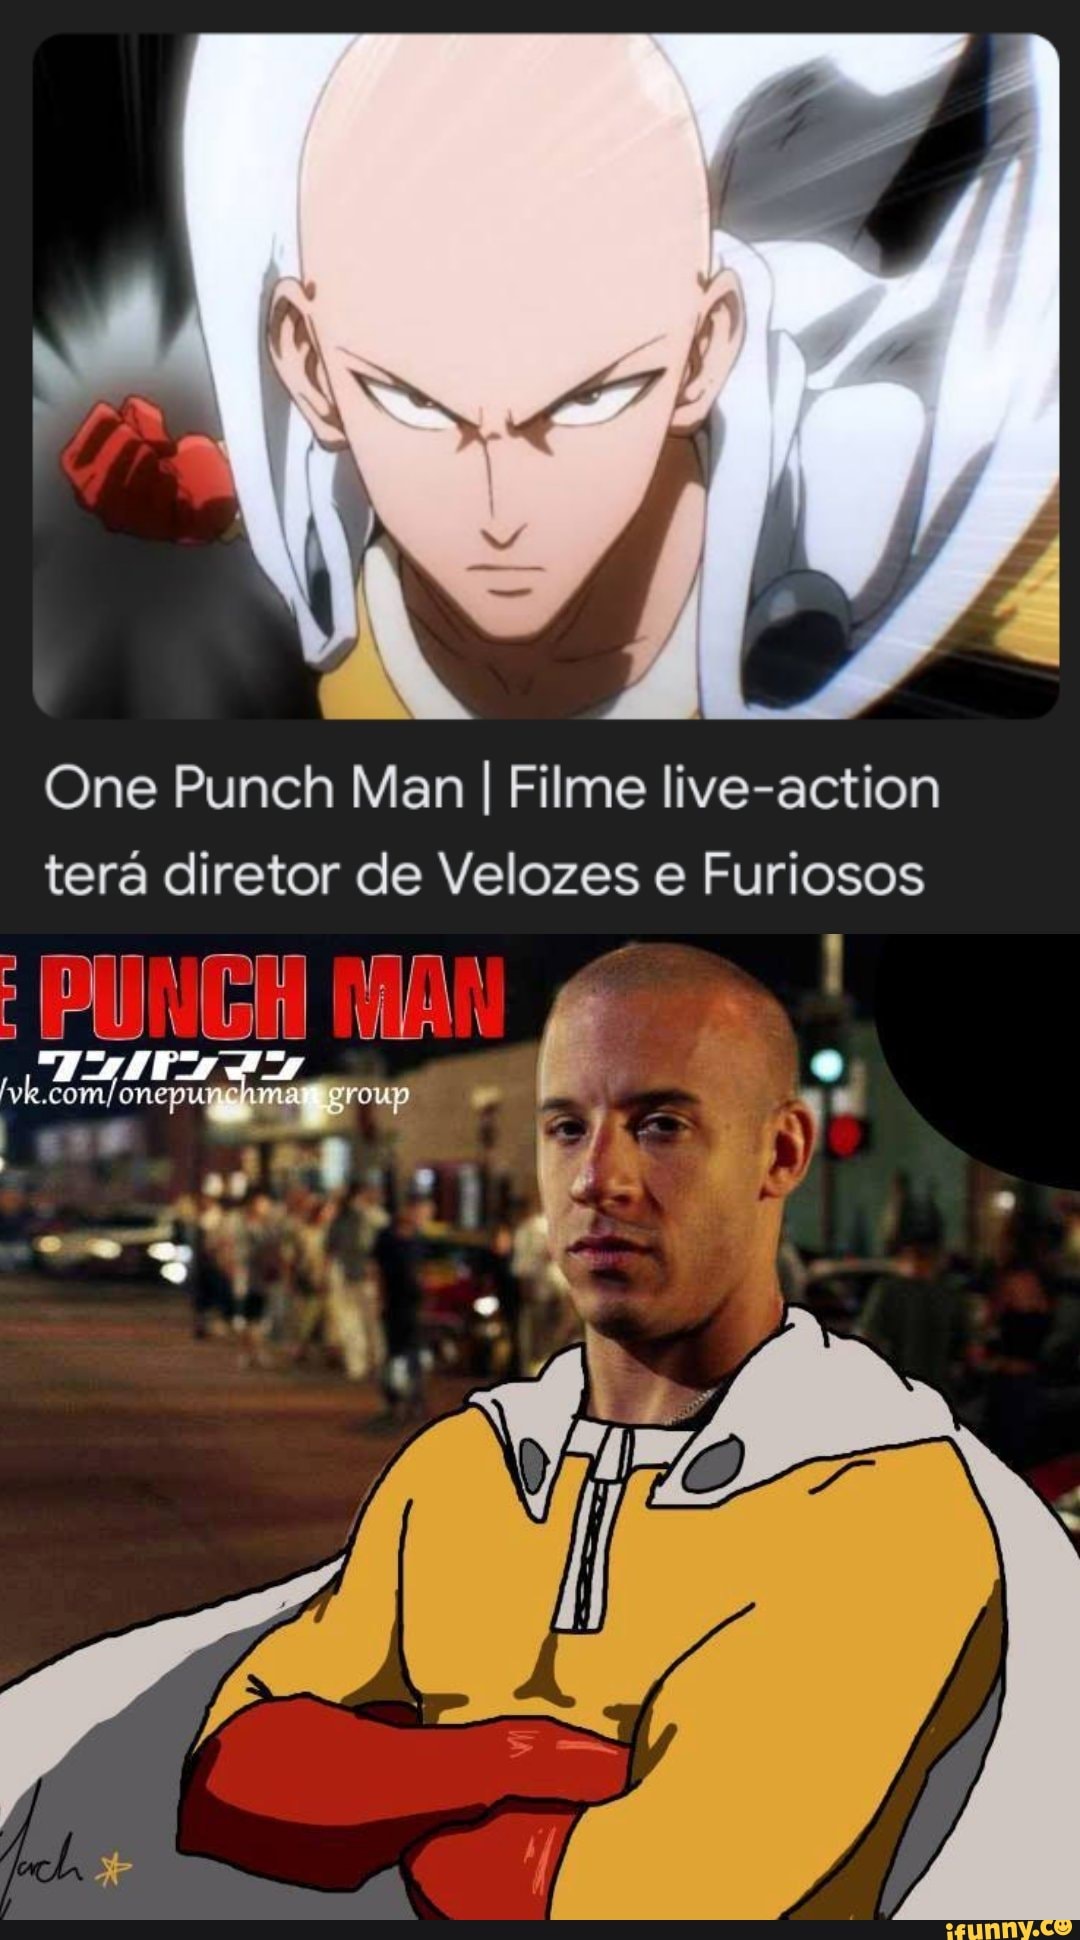 One-Punch Man: Live-action terá diretor de Velozes e Furiosos